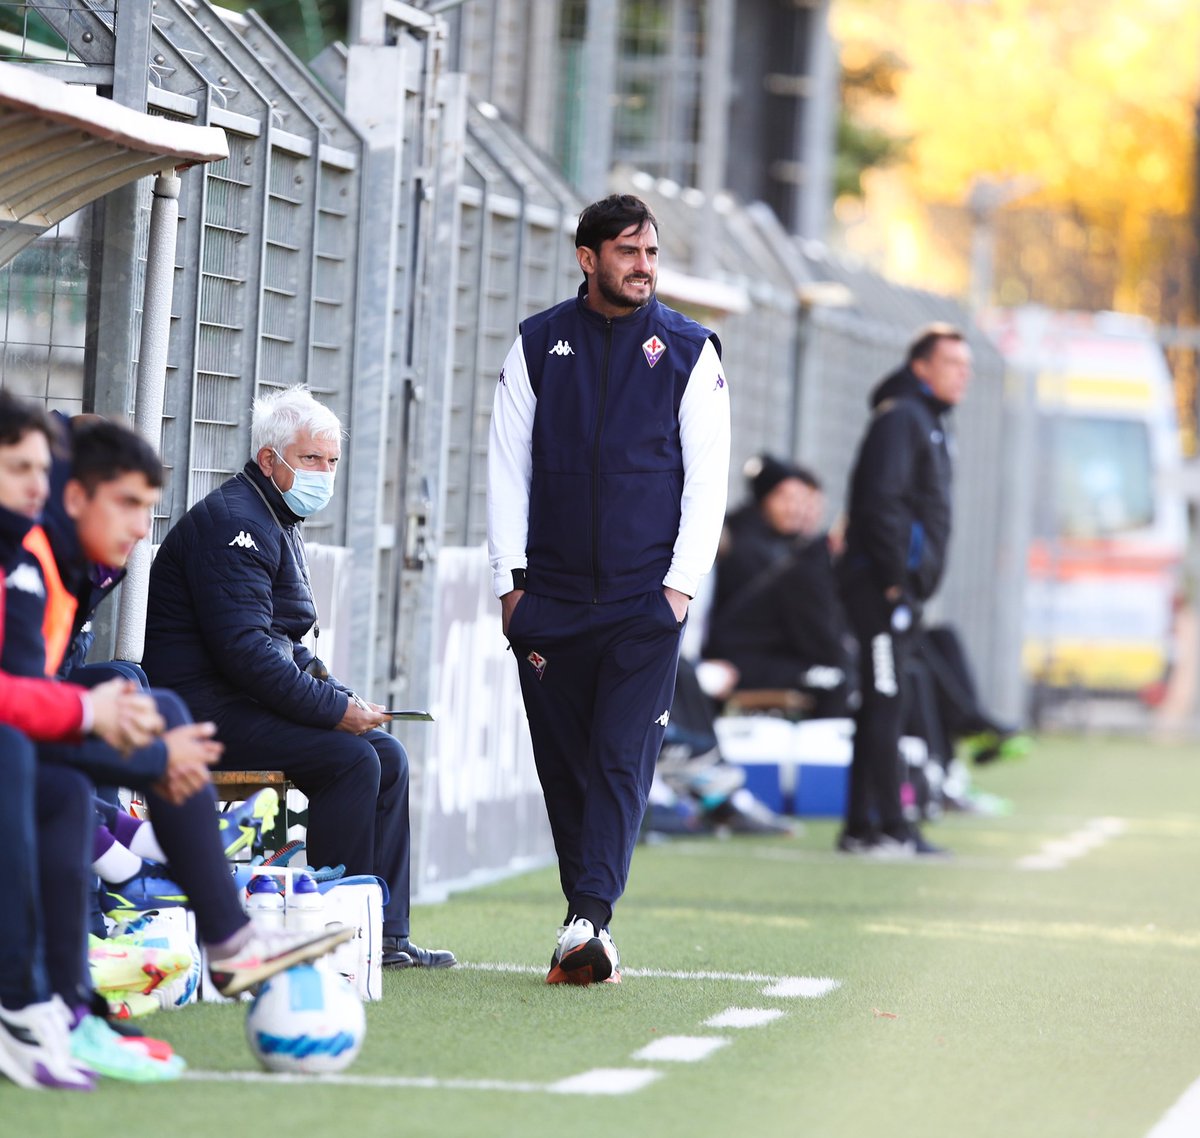 TIME TO RESTART 💪🏻💥💜 #FiorentinaPrimavera #AlbertoAquilani
@acffiorentina